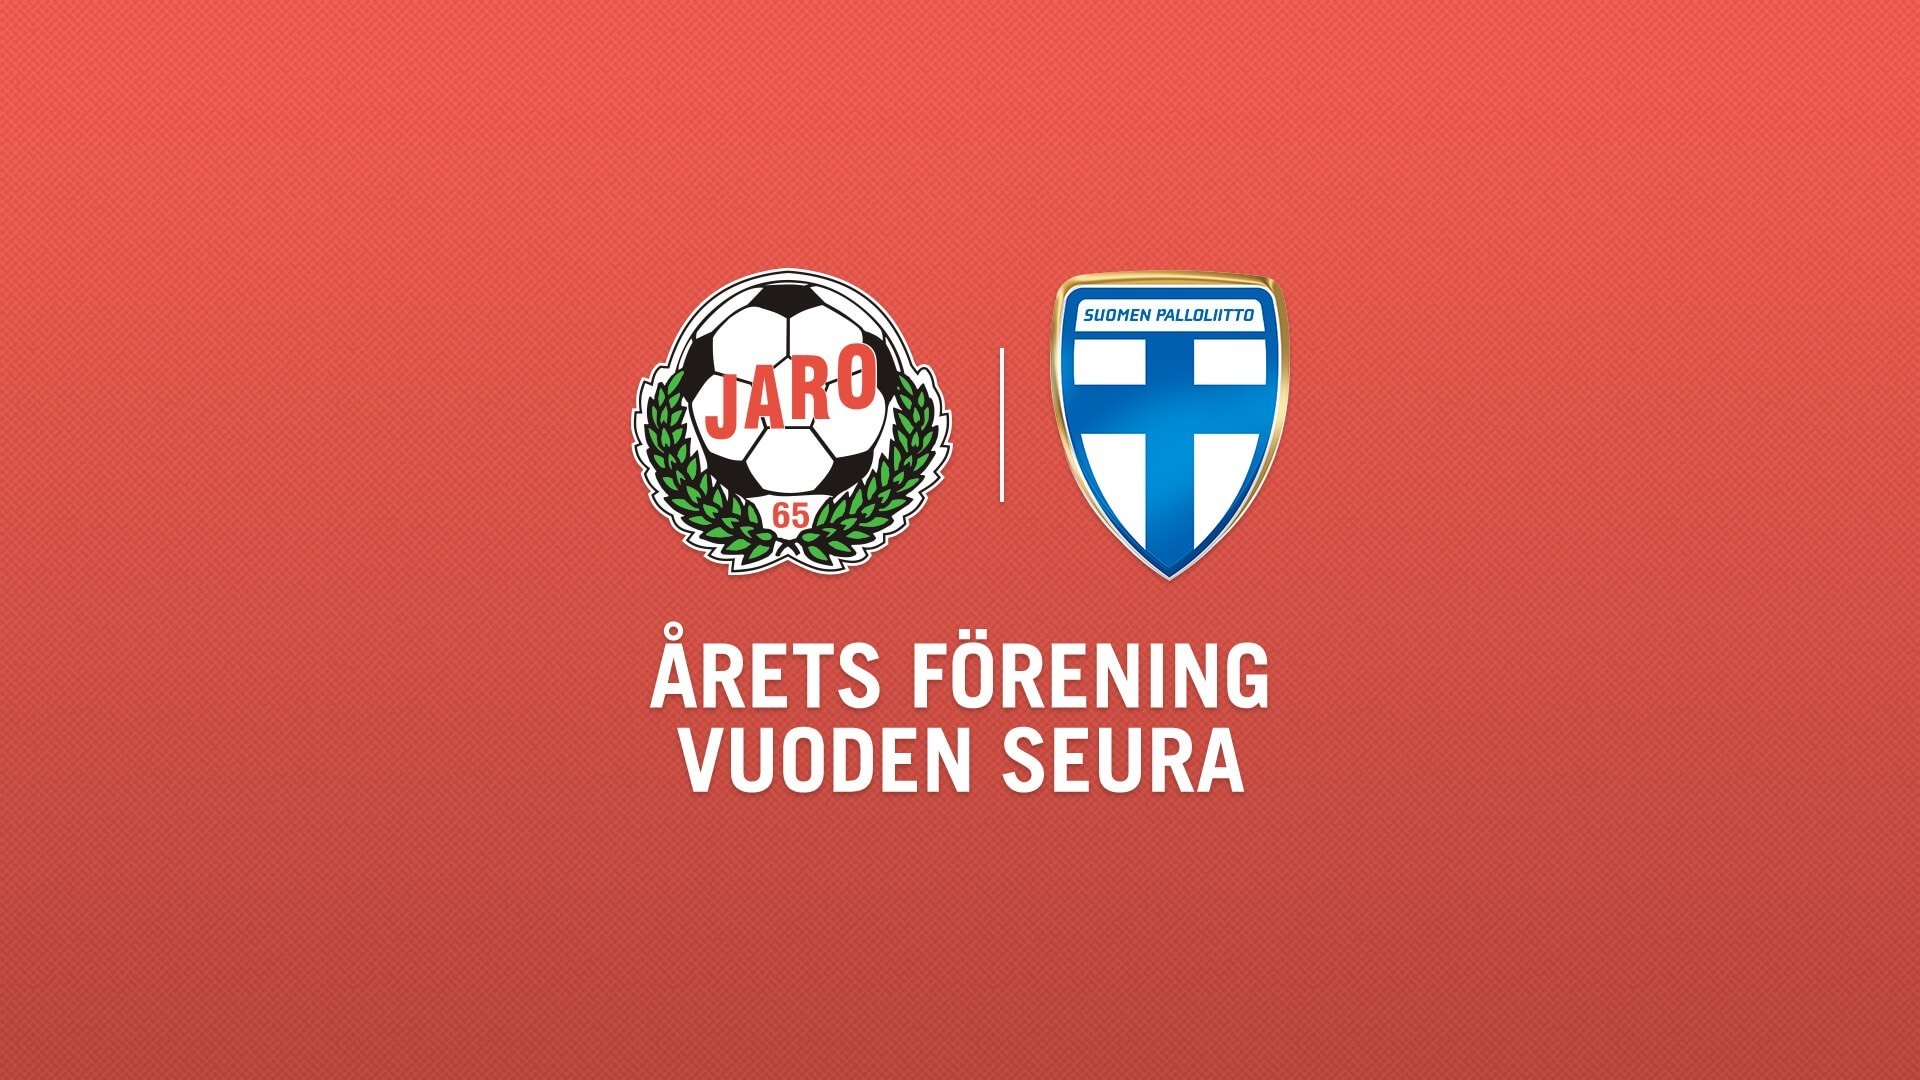 FF Jaro utsedd till Årets förening - FF Jaro vuoden seura